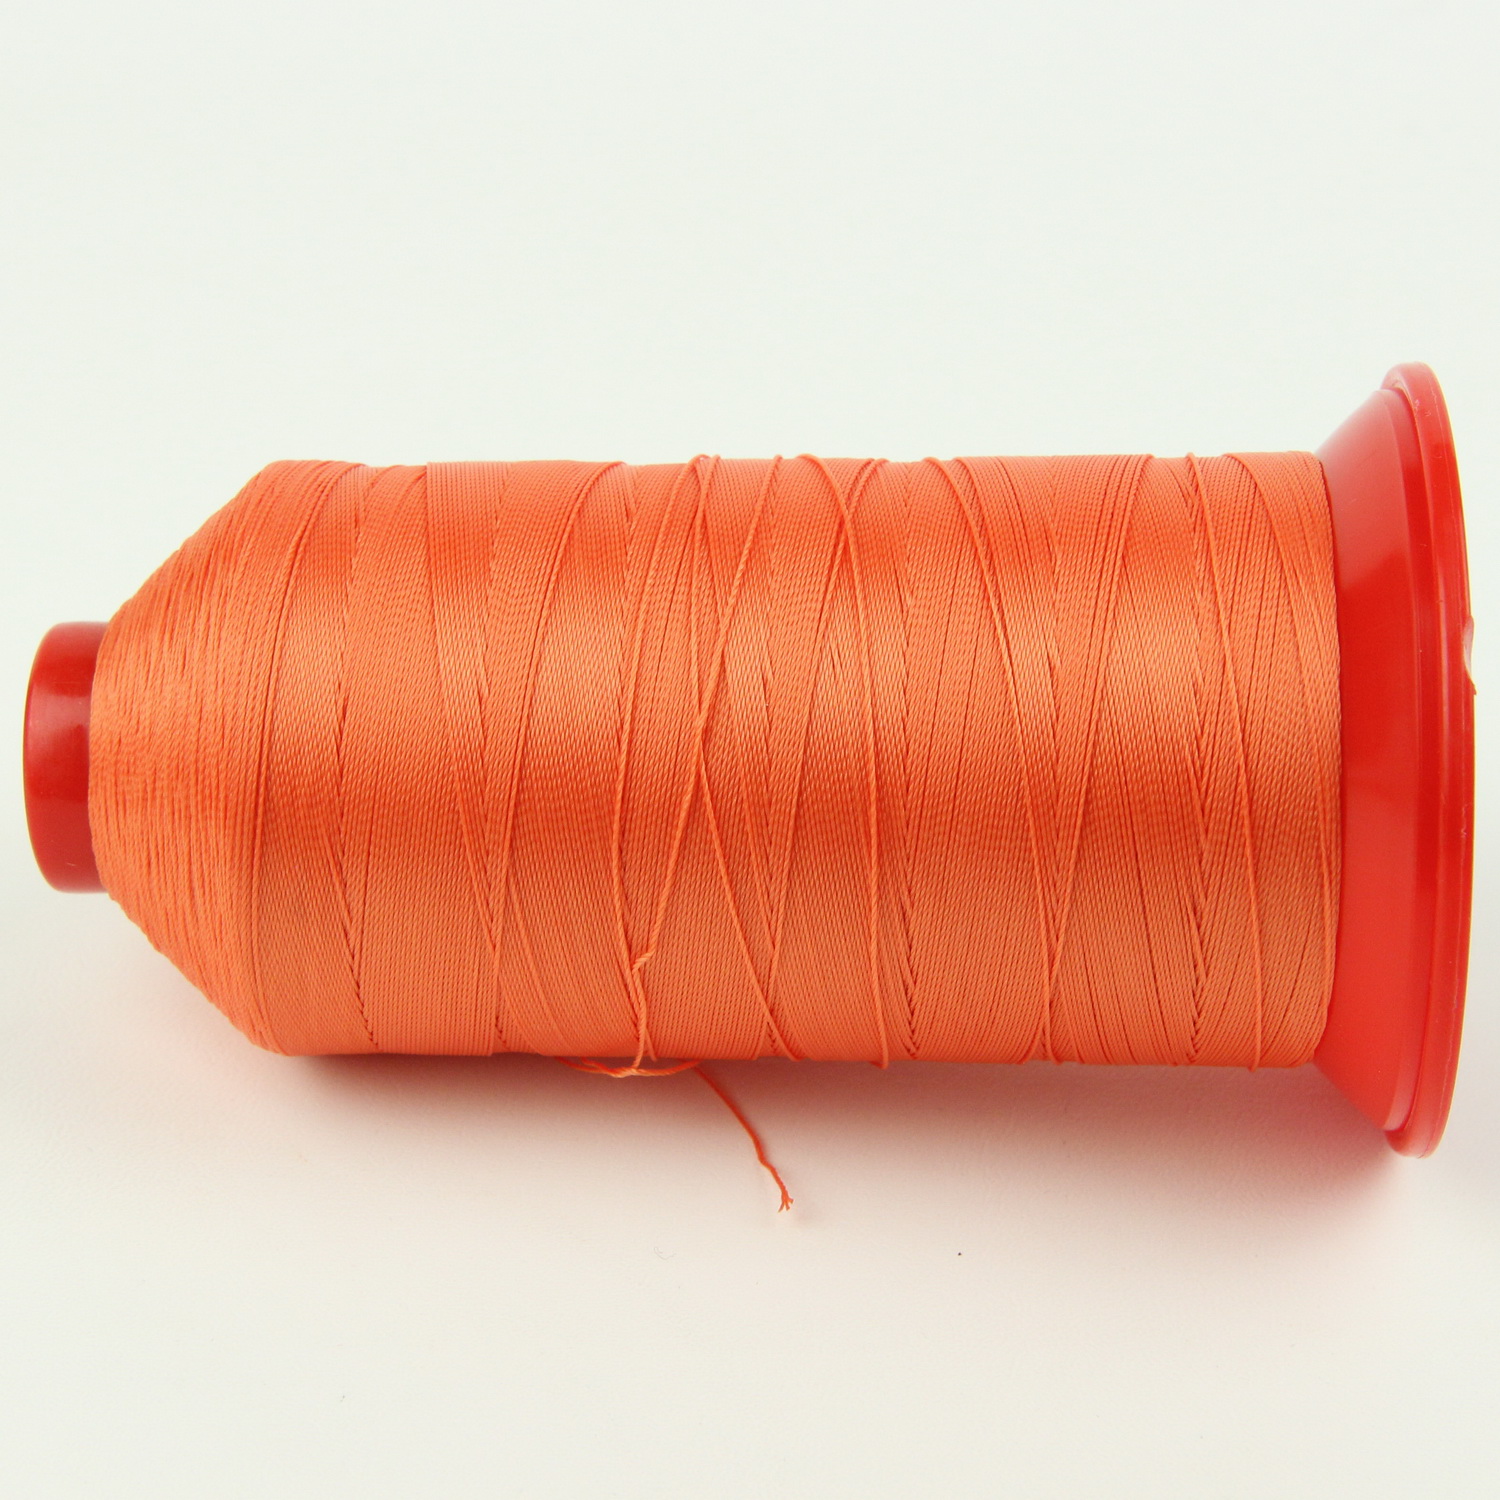 Нить POLYART(ПОЛИАРТ) N20 цвет 2830 оранжевый, для пошив чехлов на автомобильные сидения и руль, 1500м детальная фотка